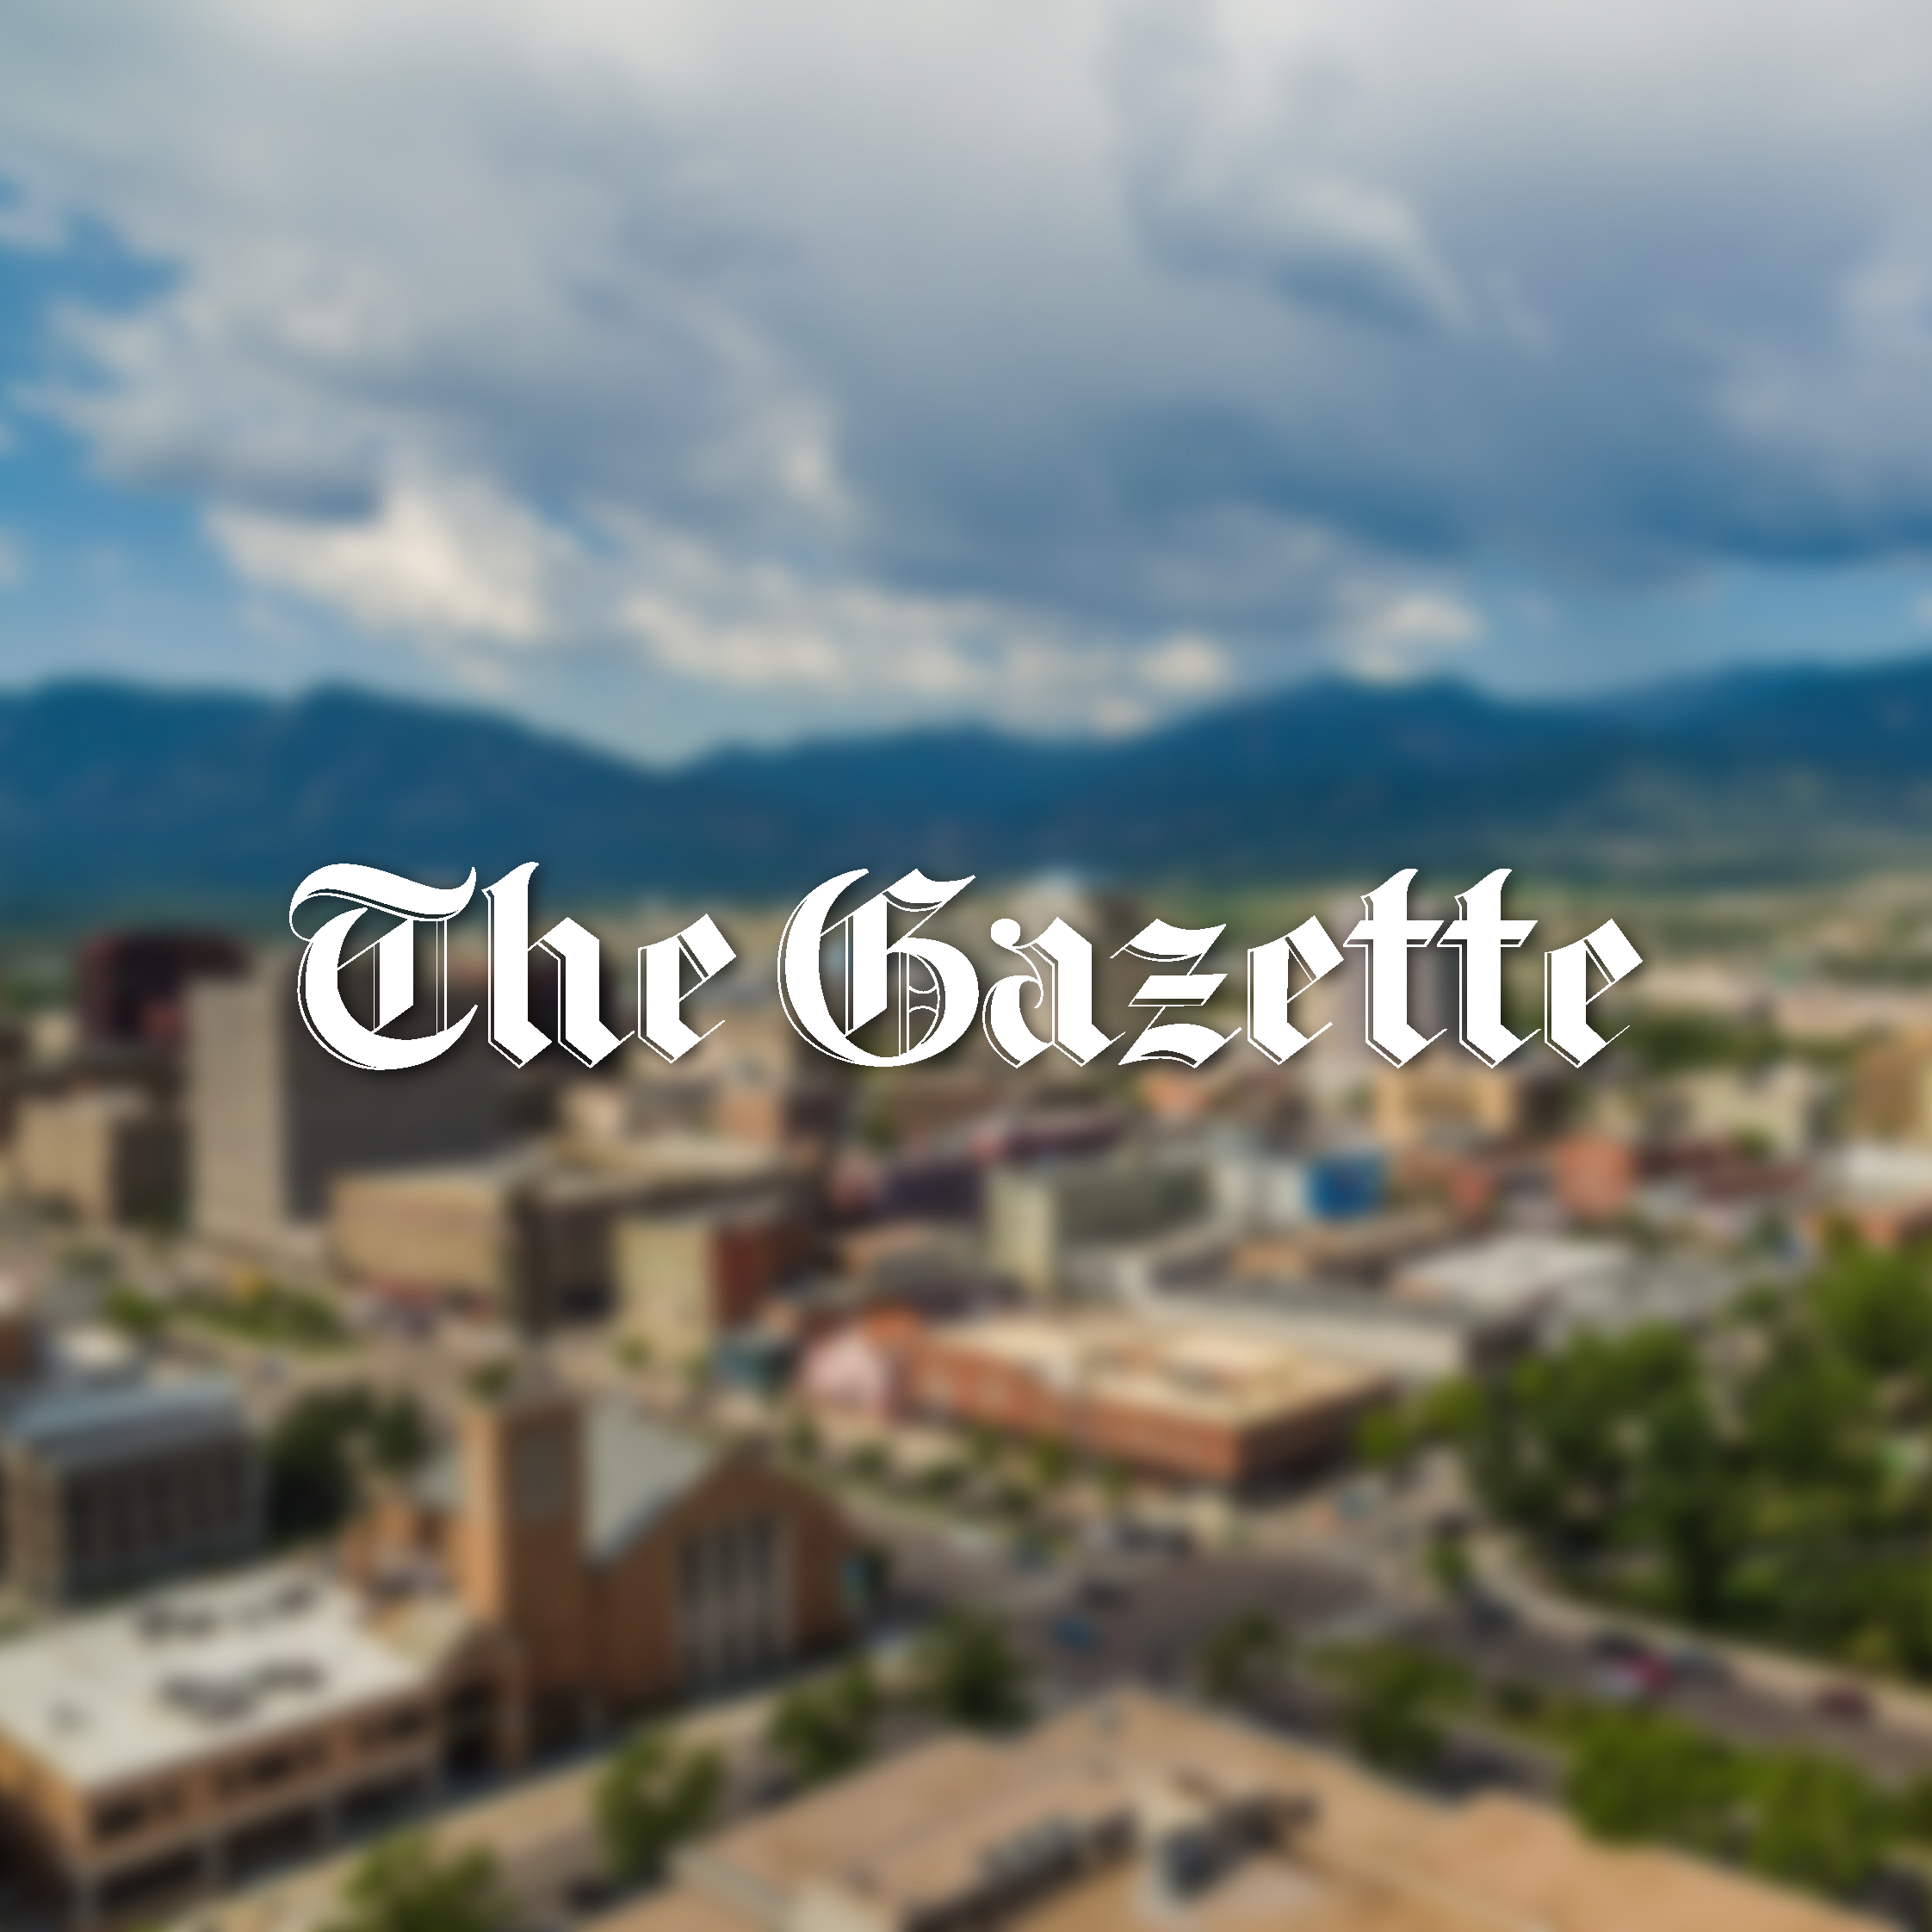 Colorado Springs Gazette